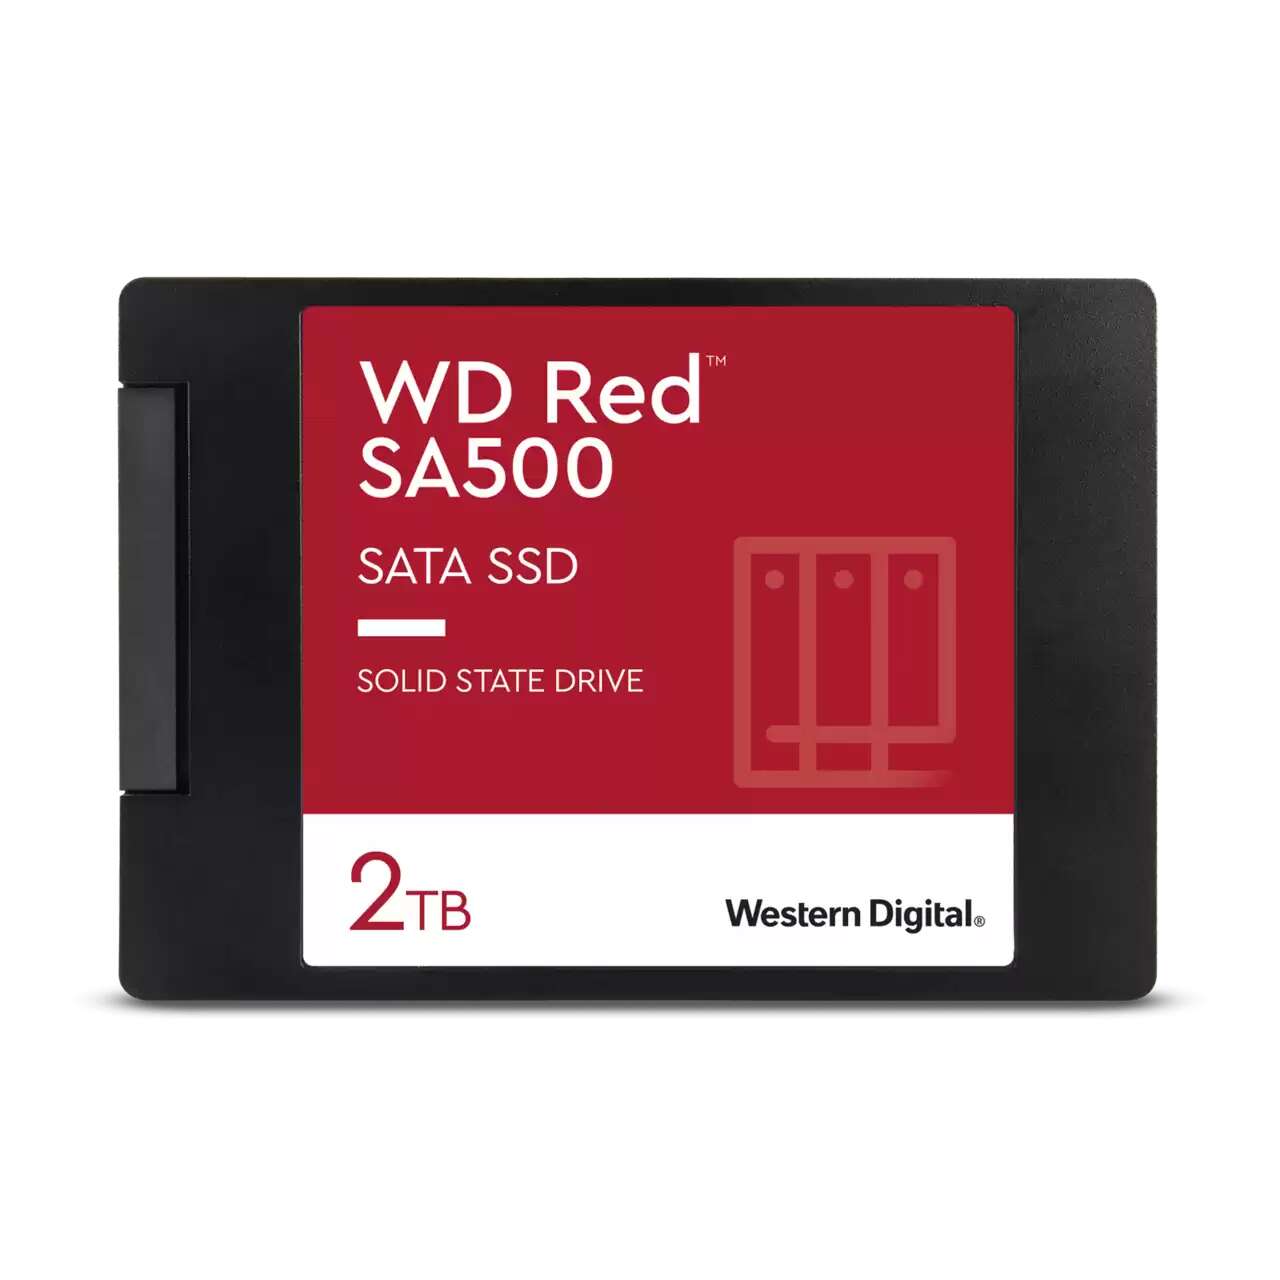 Western digital - red sa500 nas 2tb - wds200t2r0a